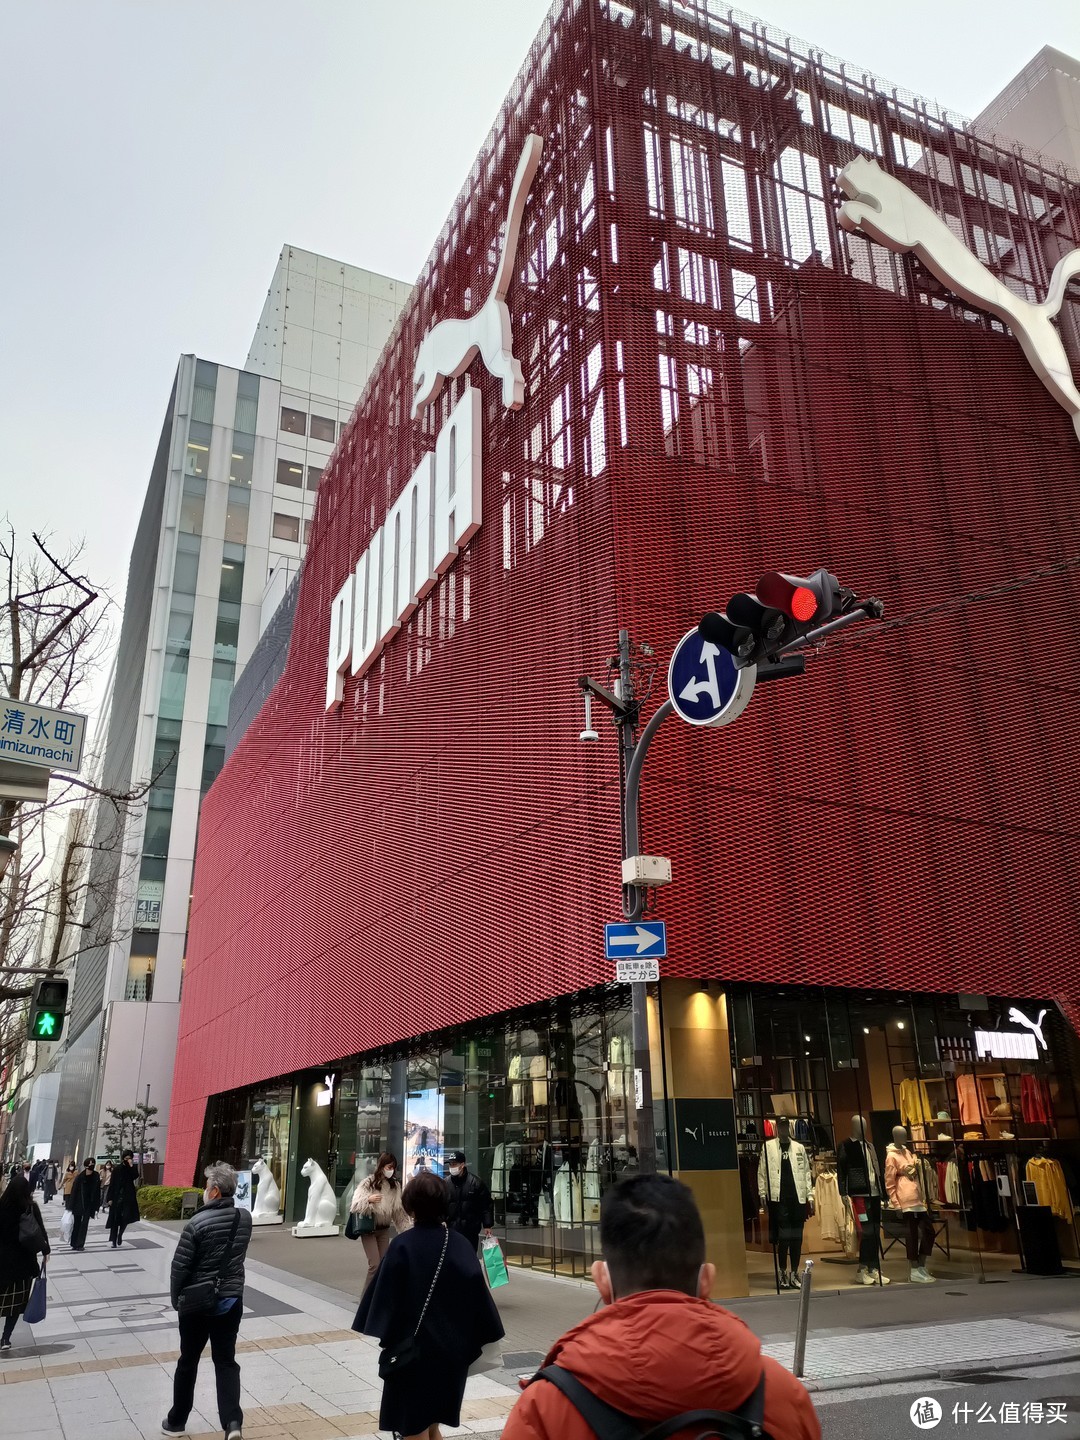 带大家走访日本大阪球鞋圣地心斋桥，特别逛一下亚瑟士（Asics）旗舰店